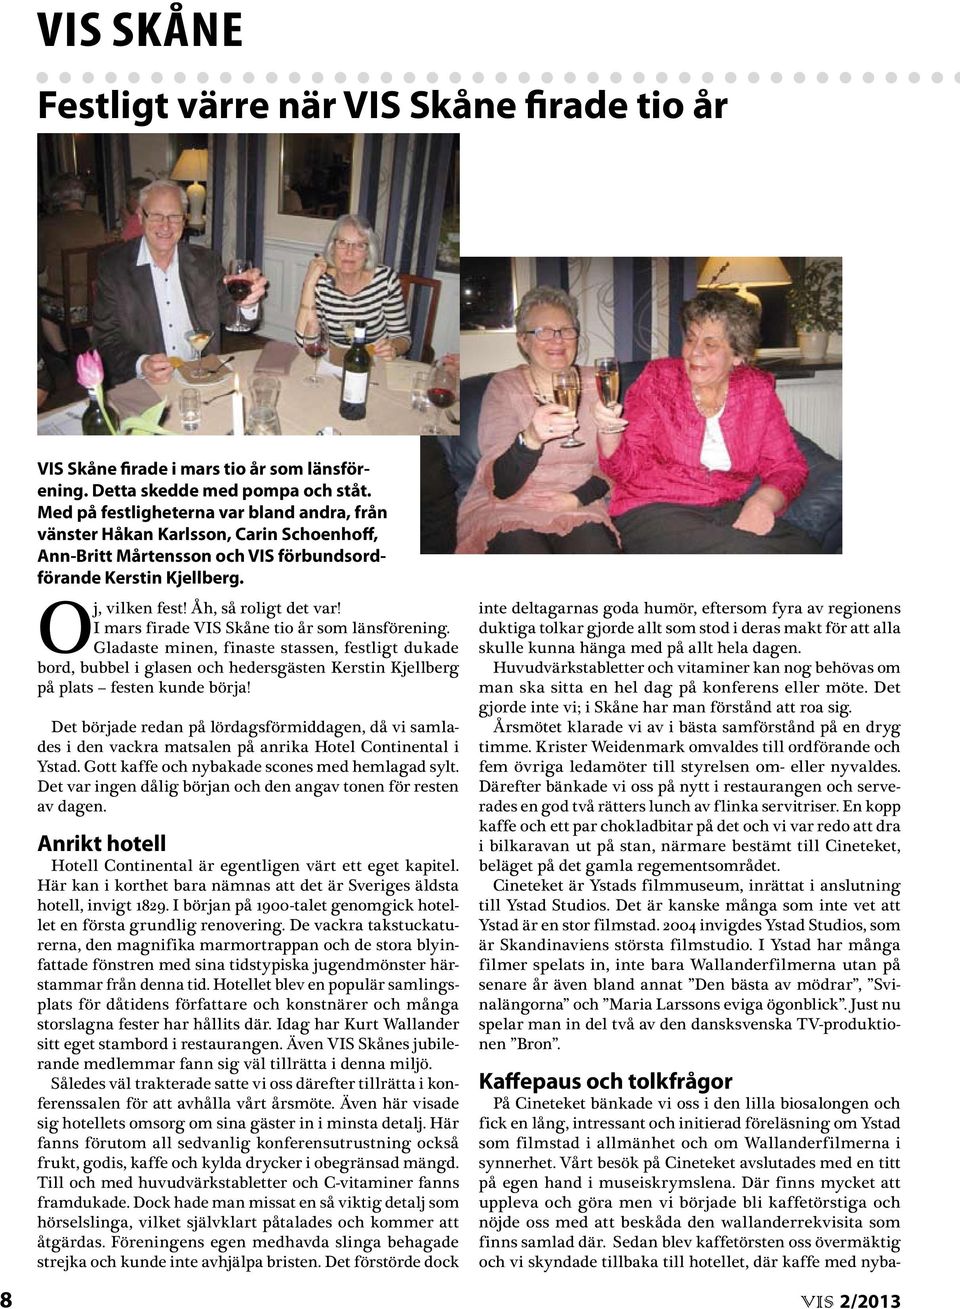 I mars firade VIS Skåne tio år som länsförening. Gladaste minen, finaste stassen, festligt dukade bord, bubbel i glasen och hedersgästen Kerstin Kjellberg på plats festen kunde börja!